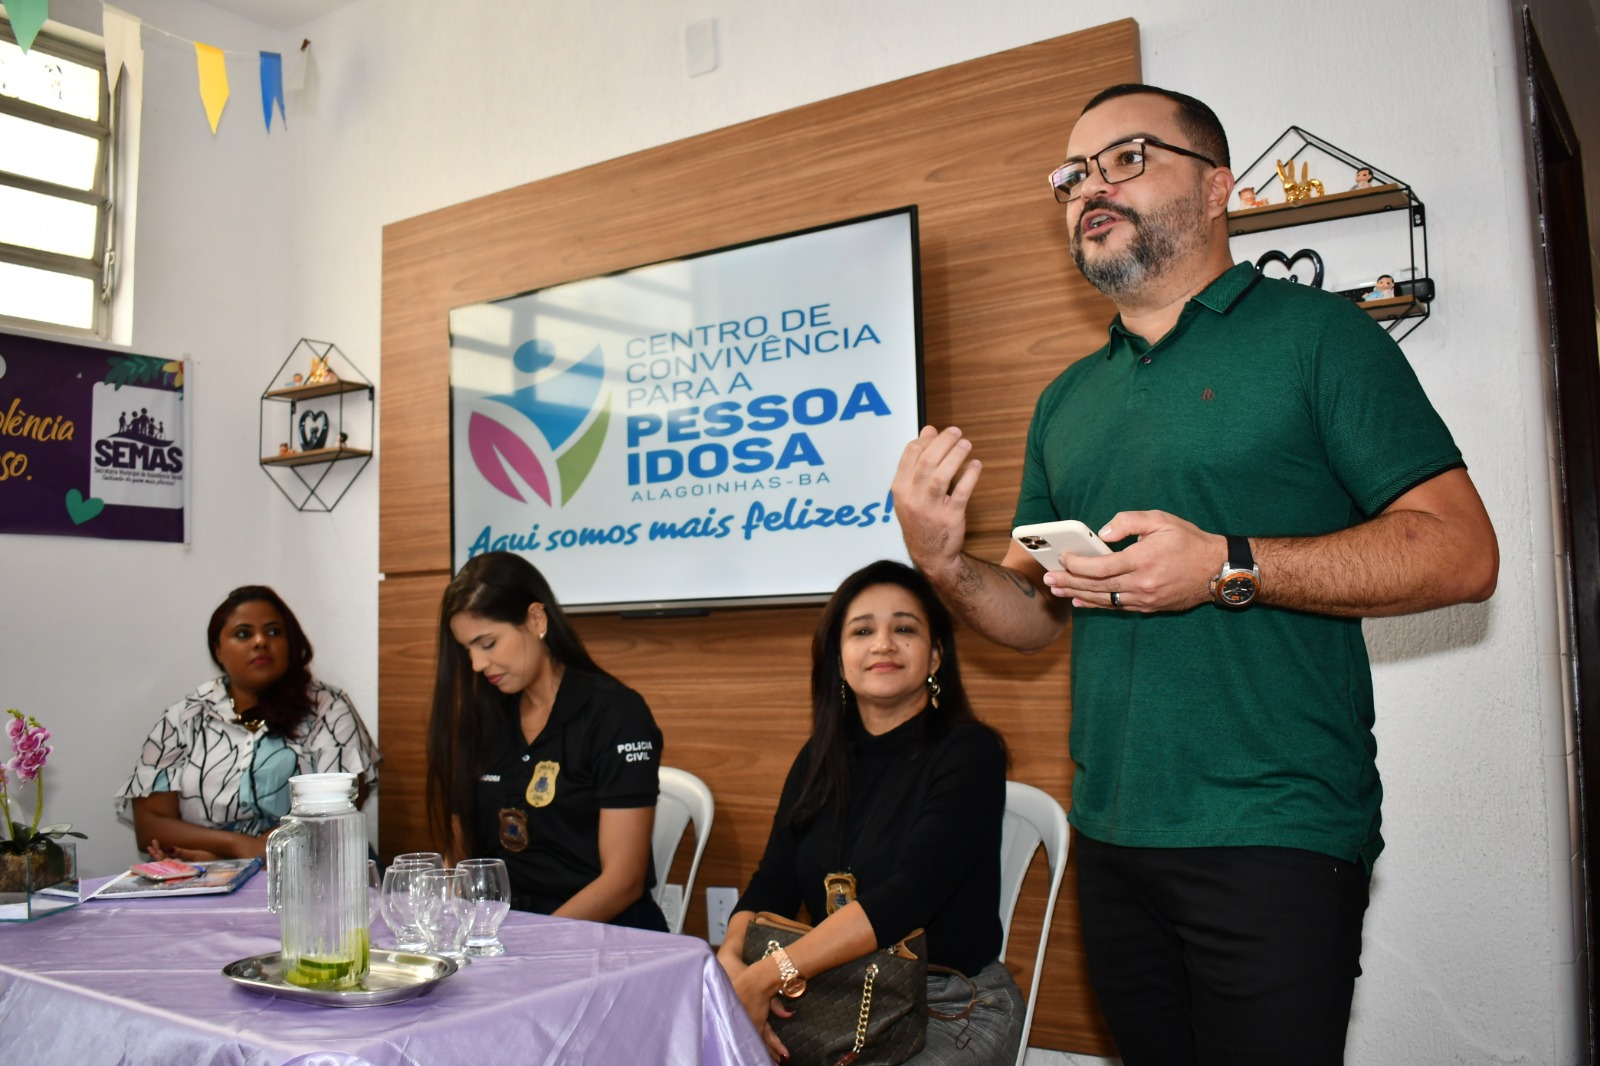 Junho Violeta: Prefeitura de Alagoinhas debate Violência contra a Pessoa Idosa